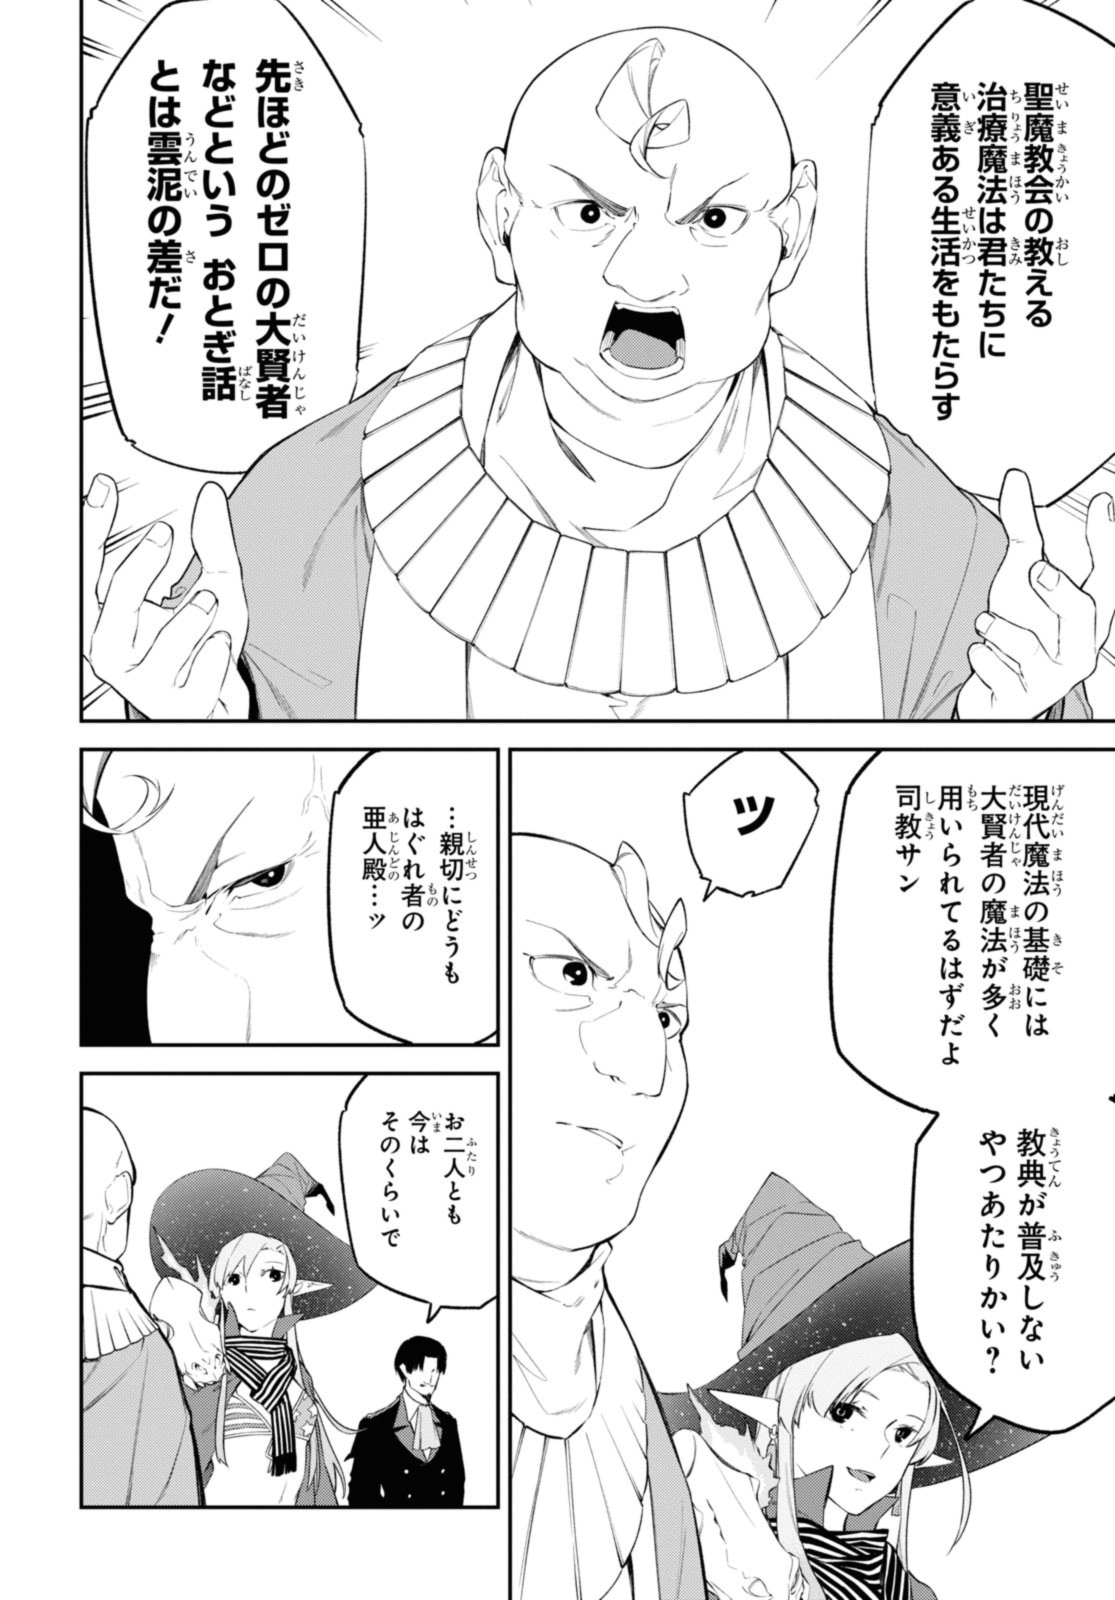 Maryoku 0 de Saikyou no Daikenja ~Sore wa Mahou dewa Nai, Butsuri da!~ - Chapter 38.3 - Page 1